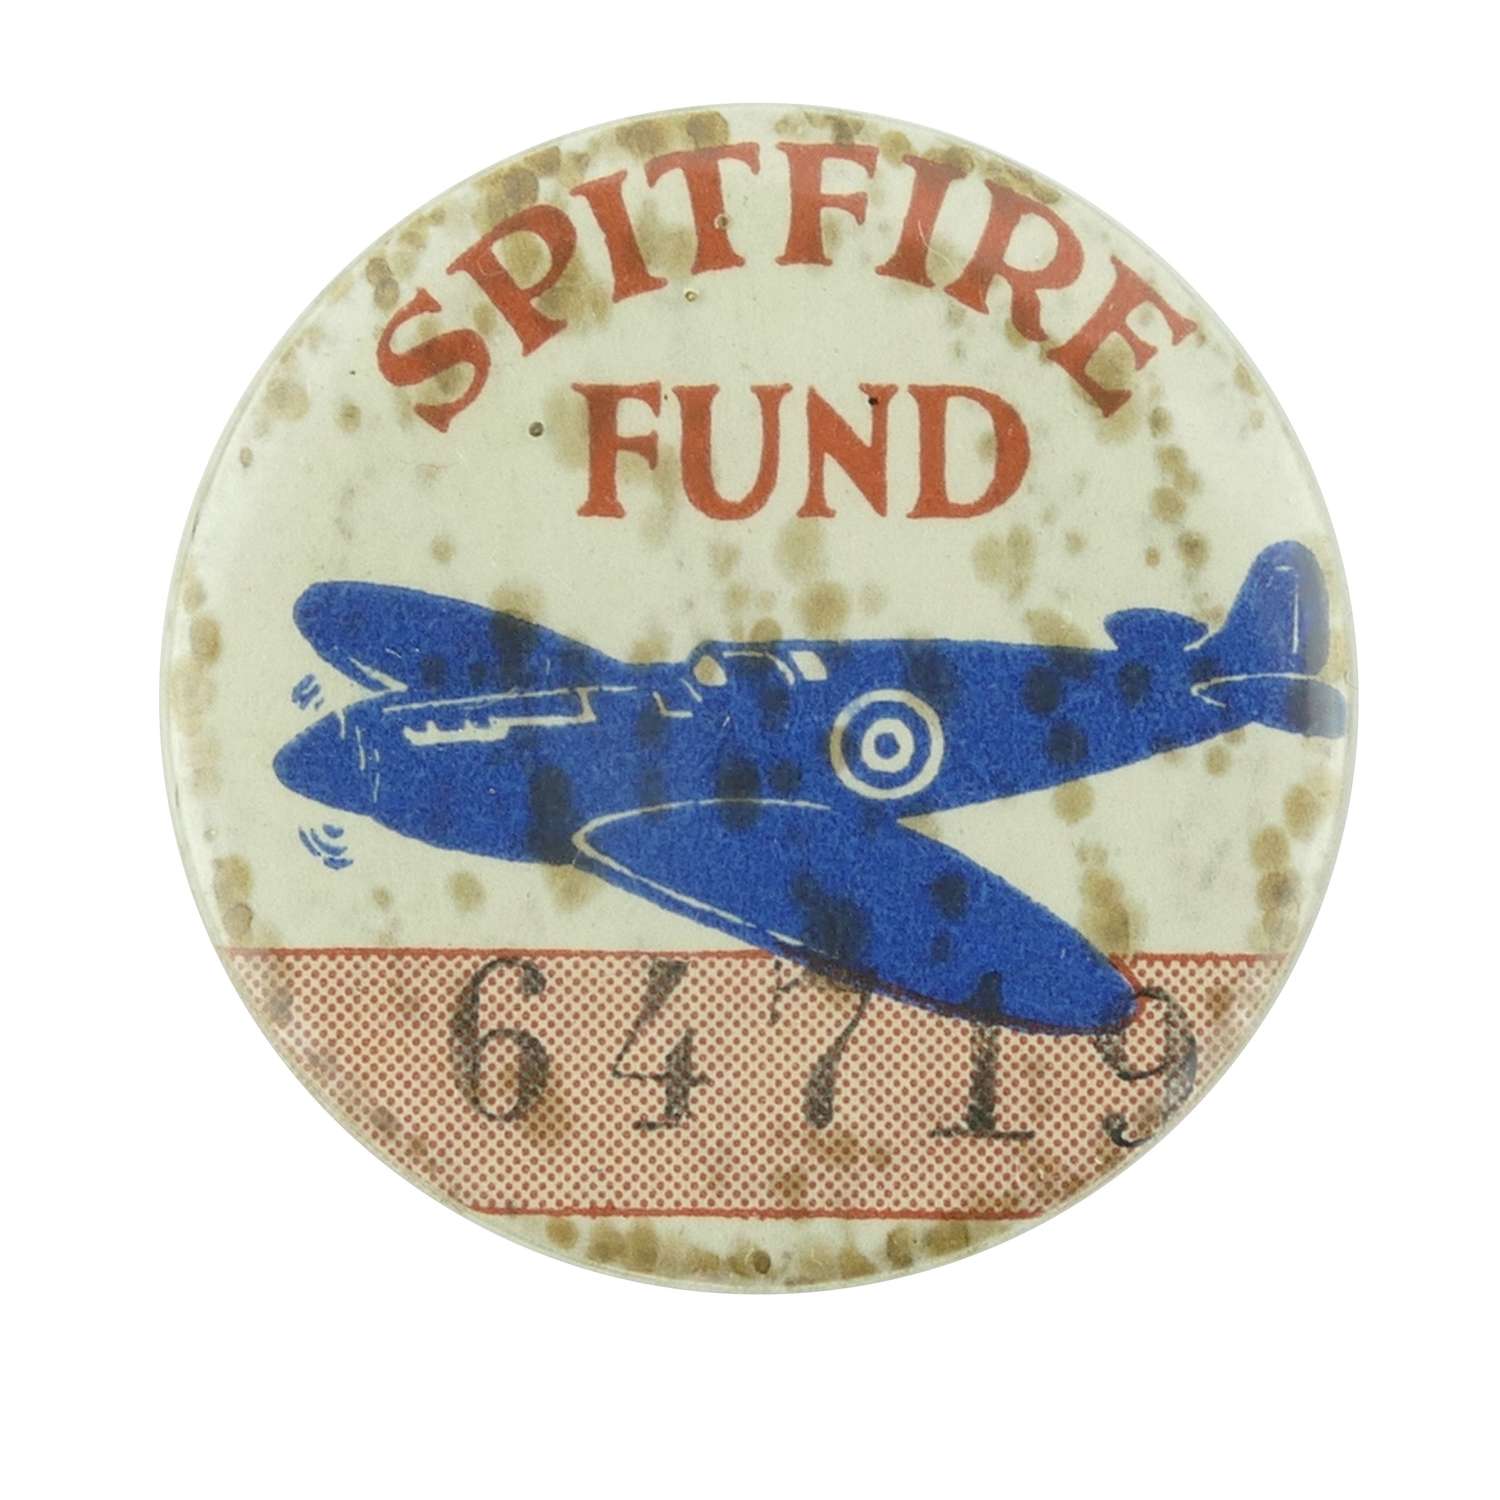 WW2 Spitfire Fund badge